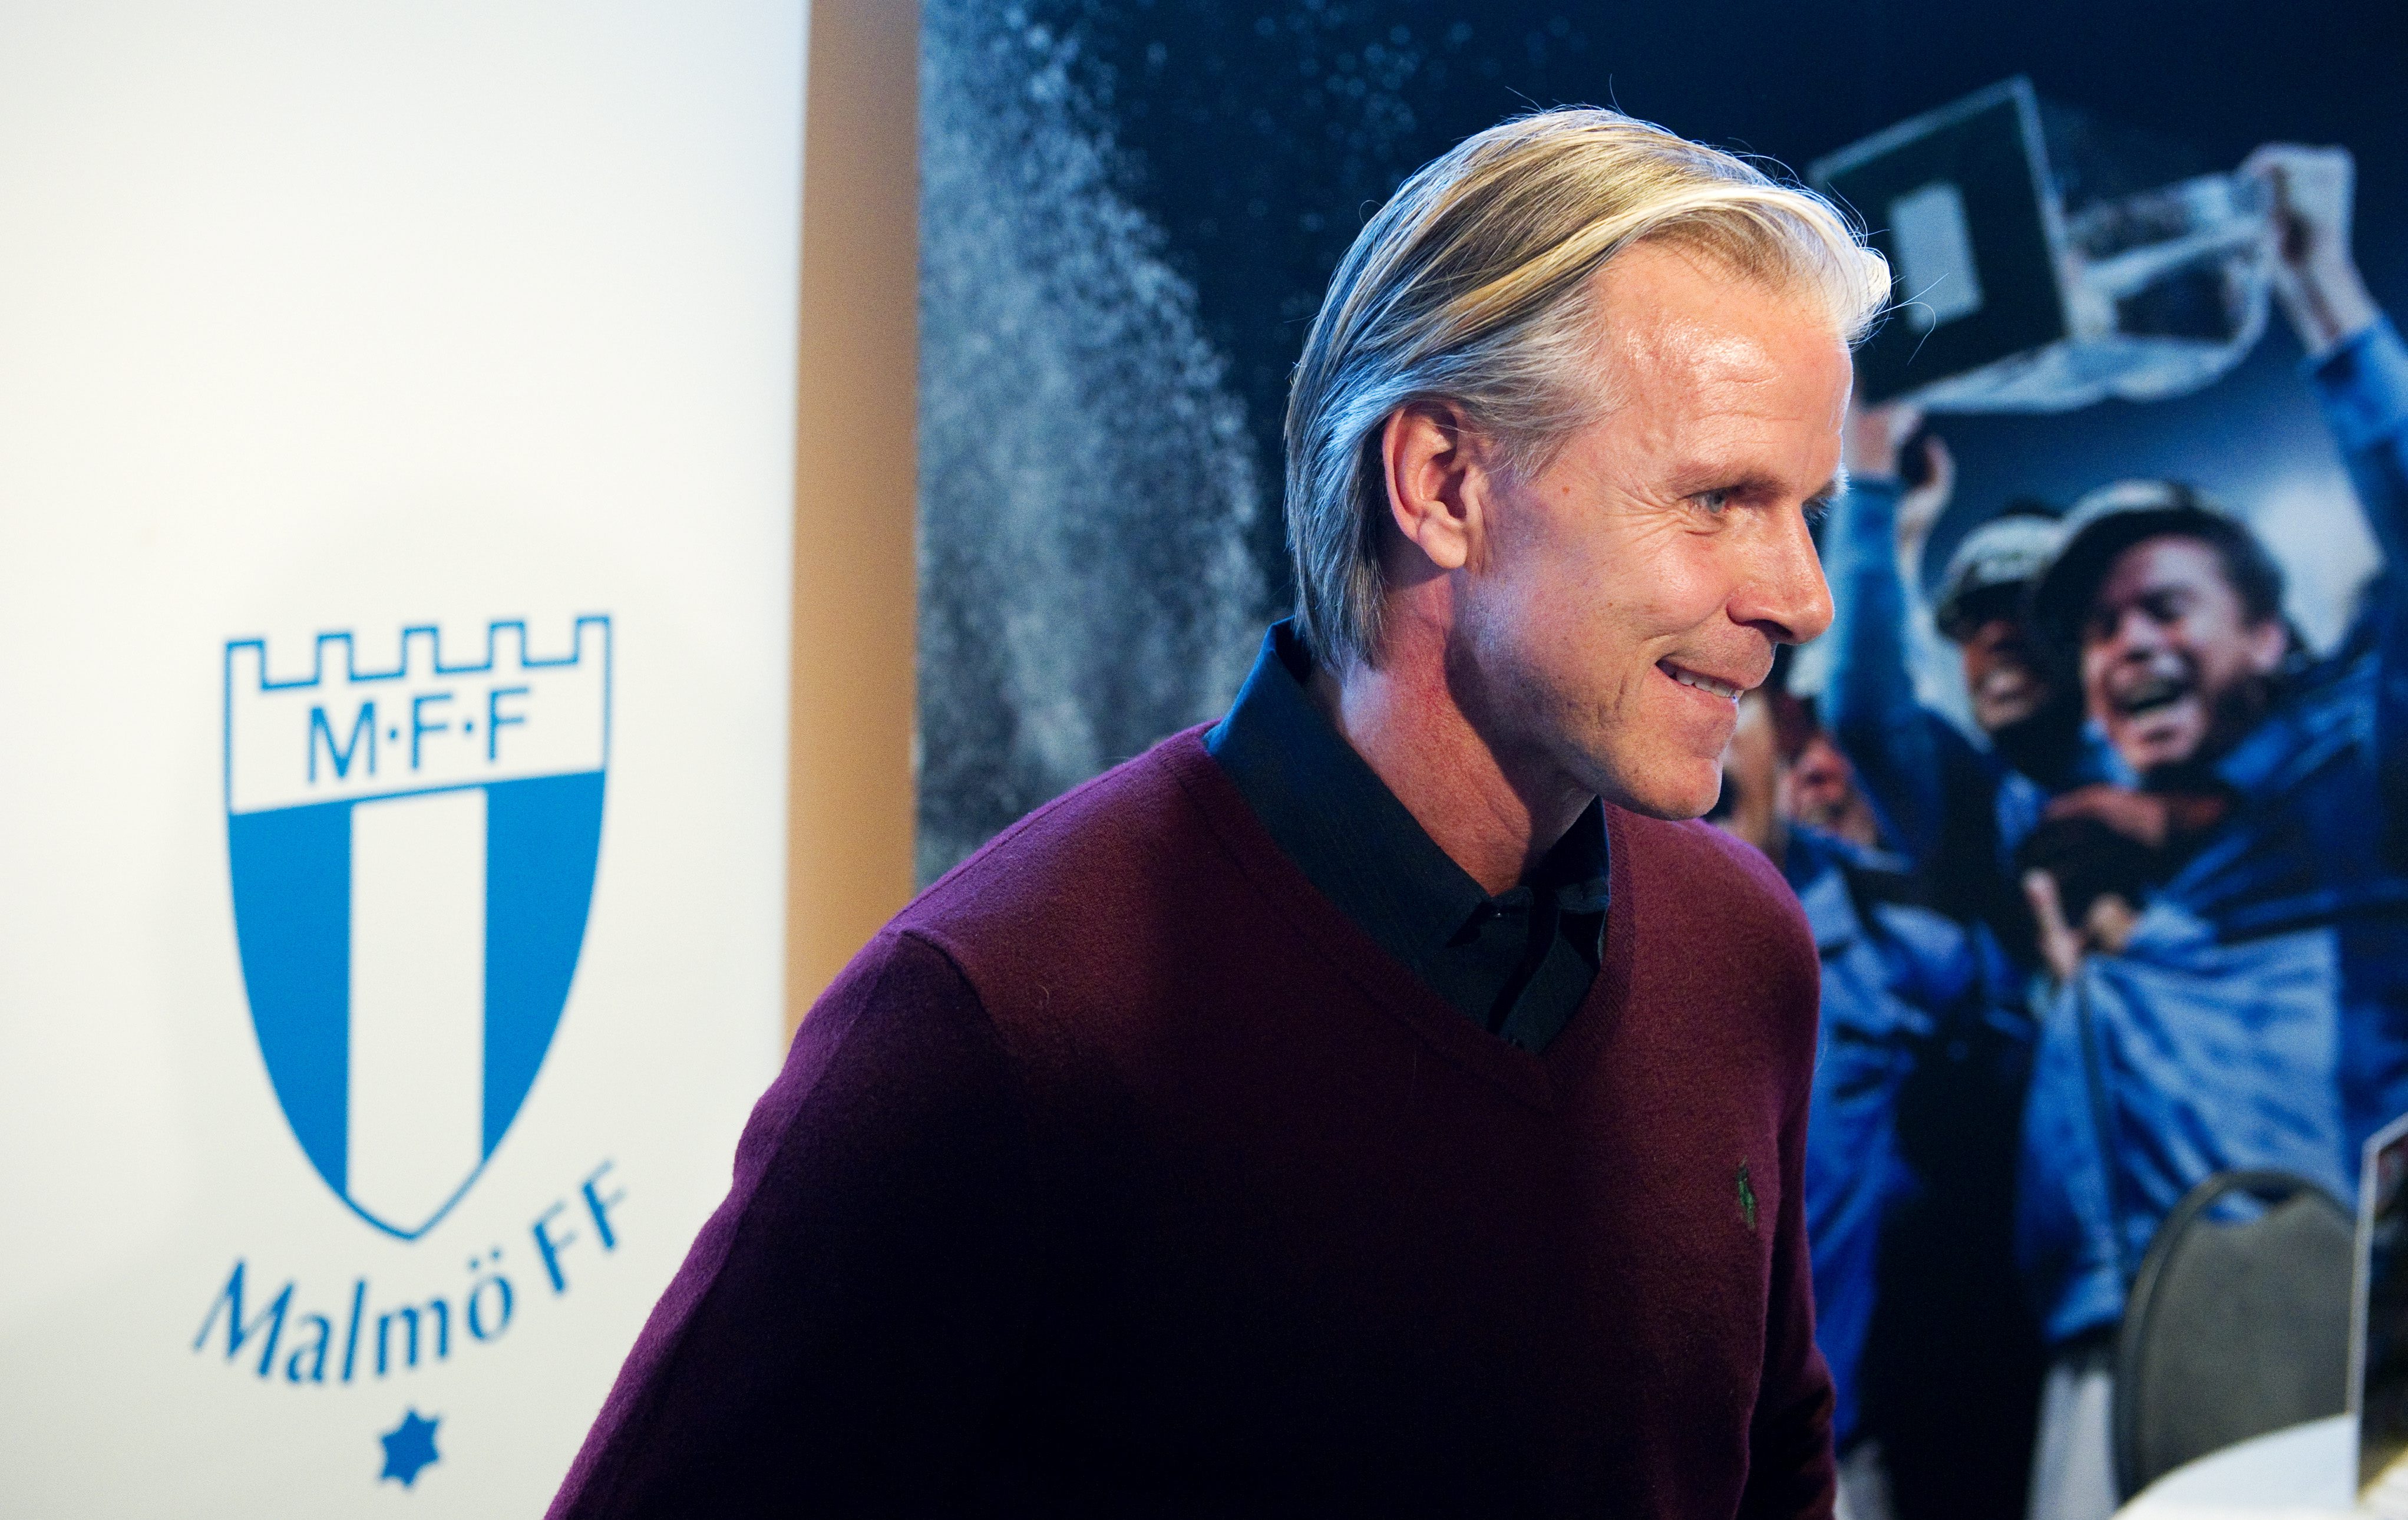 Roland Nilsson lämnar som bekant Malmö FF antingen till sommaren eller efter säsongens slut.